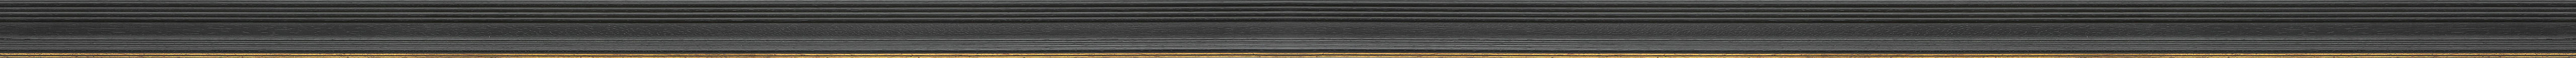 Decape black frame with golden stripe frame